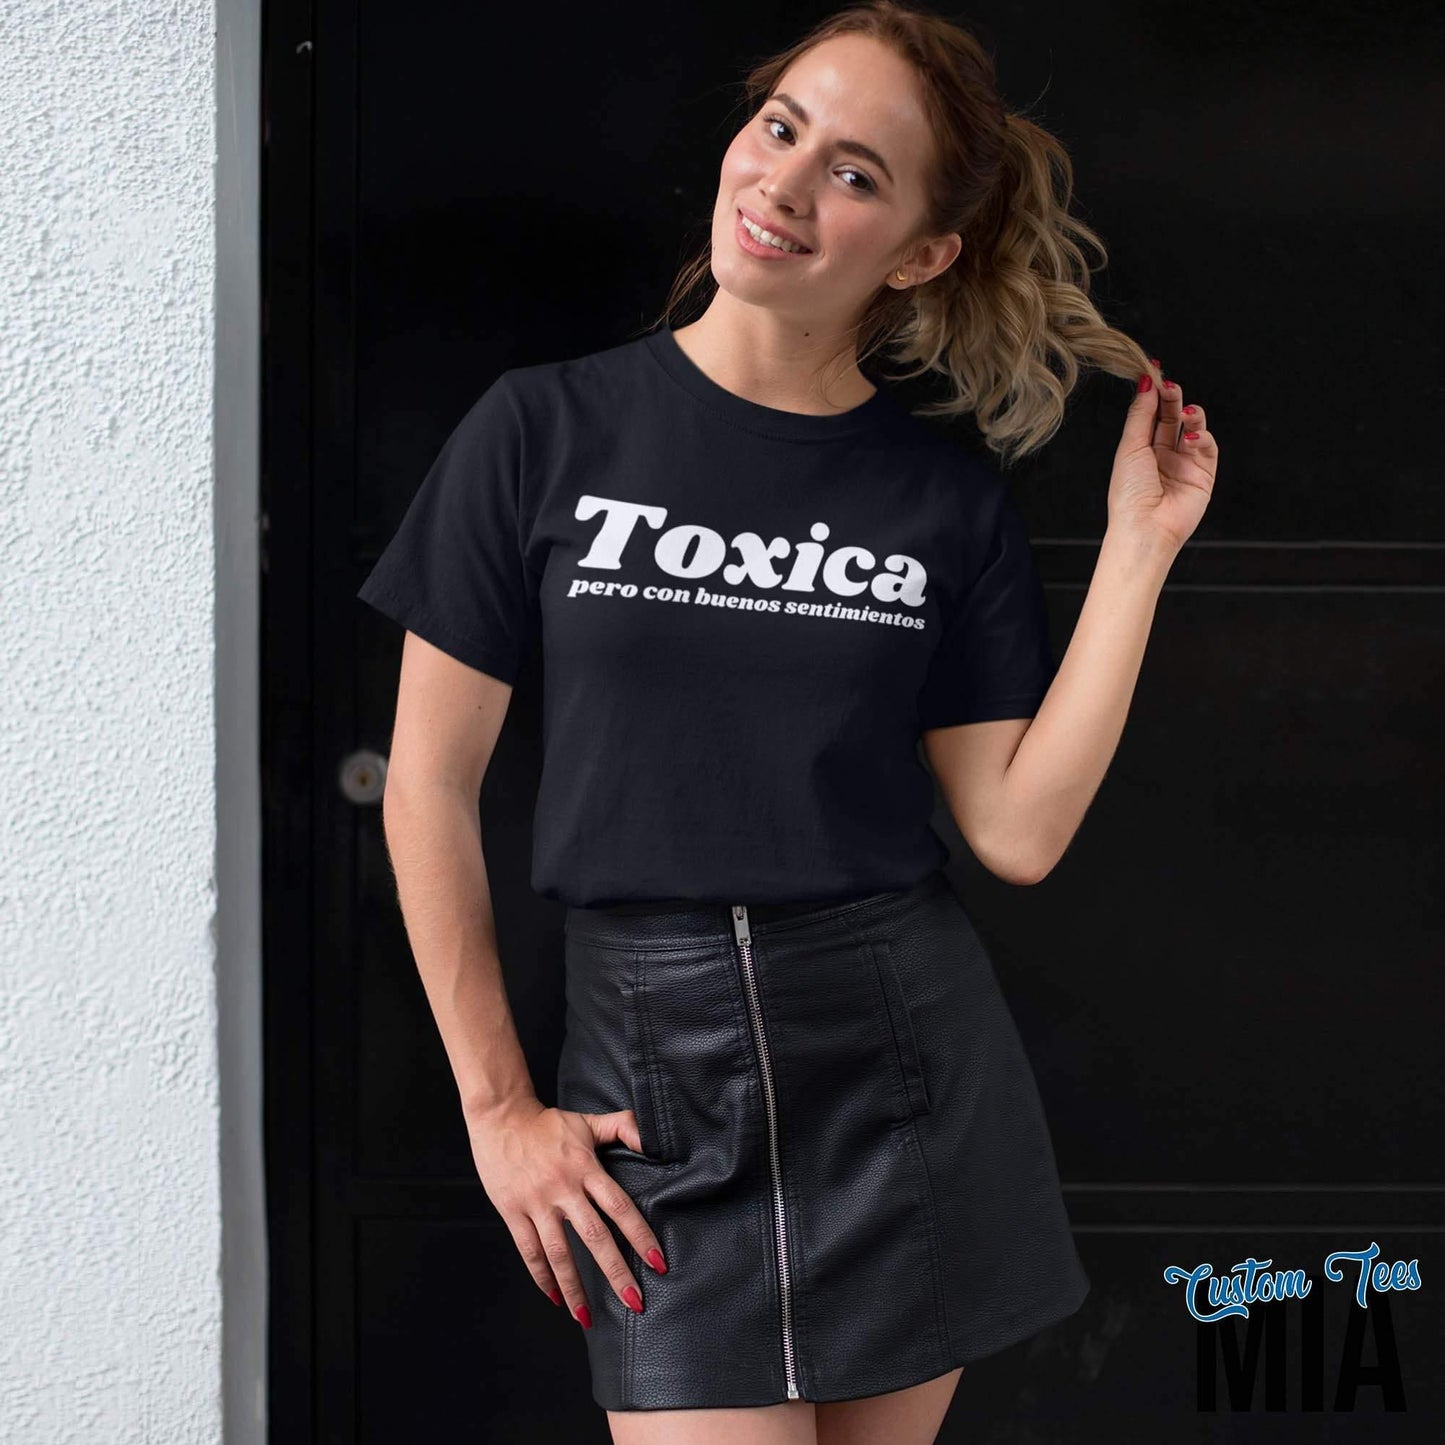 Toxica Pero Con Buenos Sentimientos Shirt - Custom Tees MIA